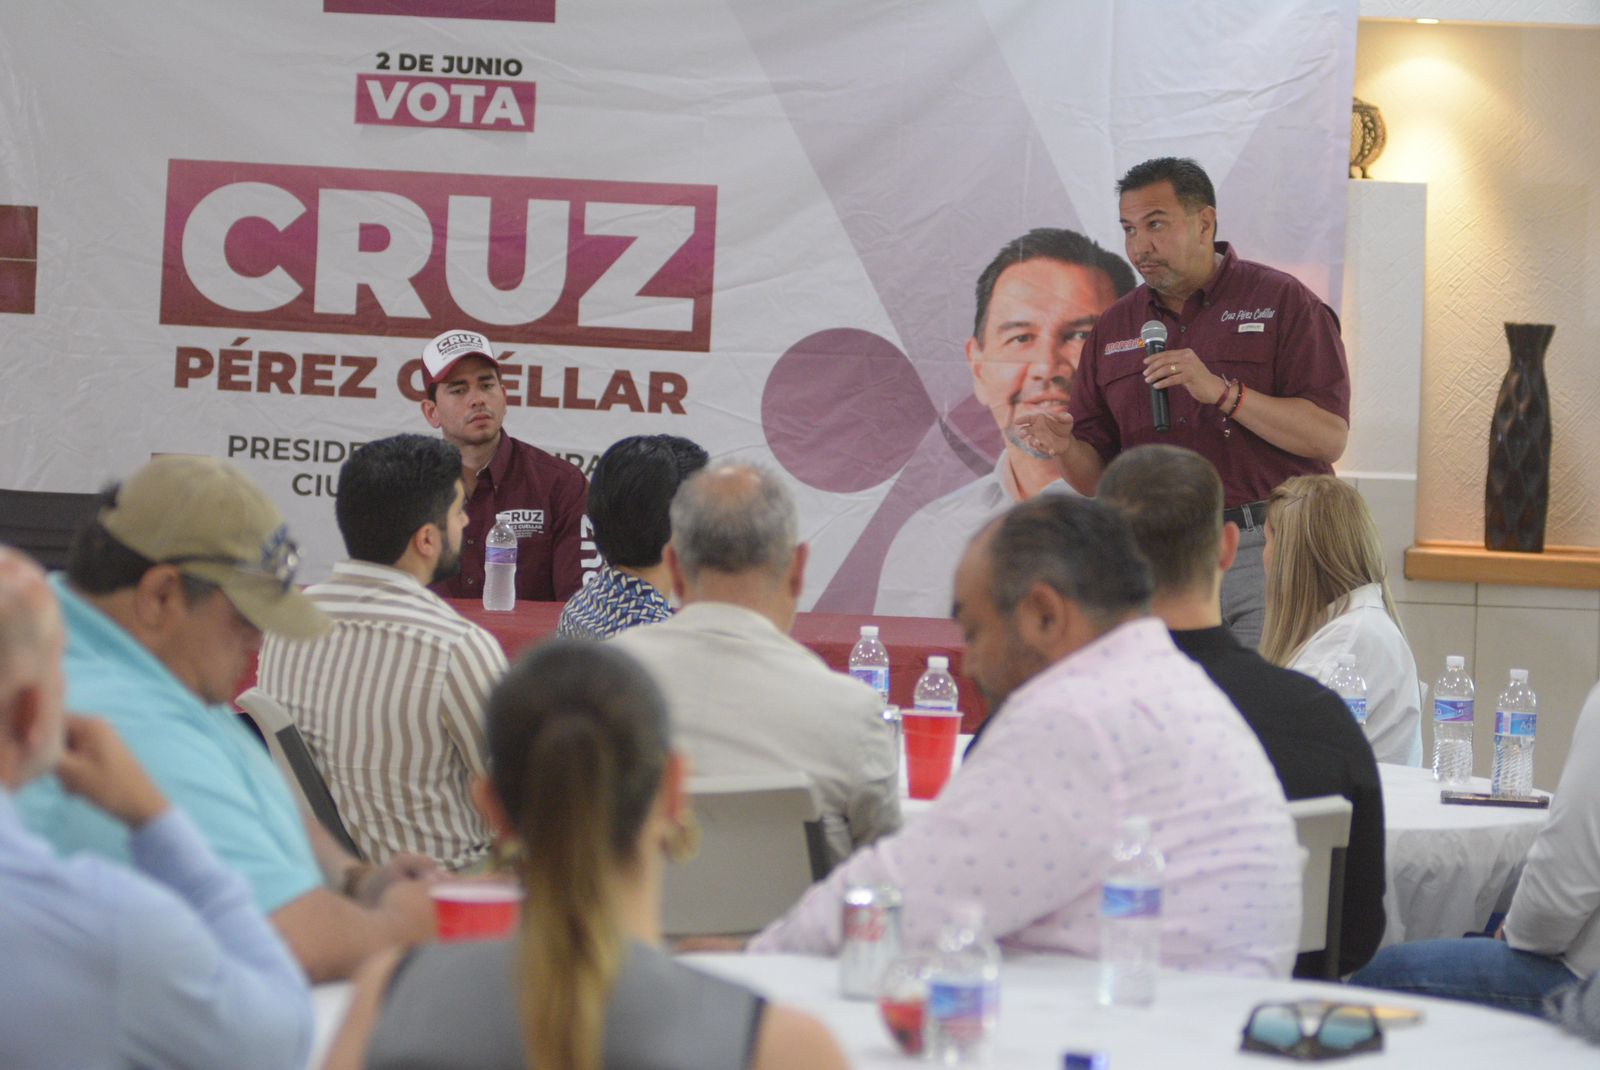 Empresarios de distintos sectores respaldan el proyecto de Cruz Pérez Cuéllar